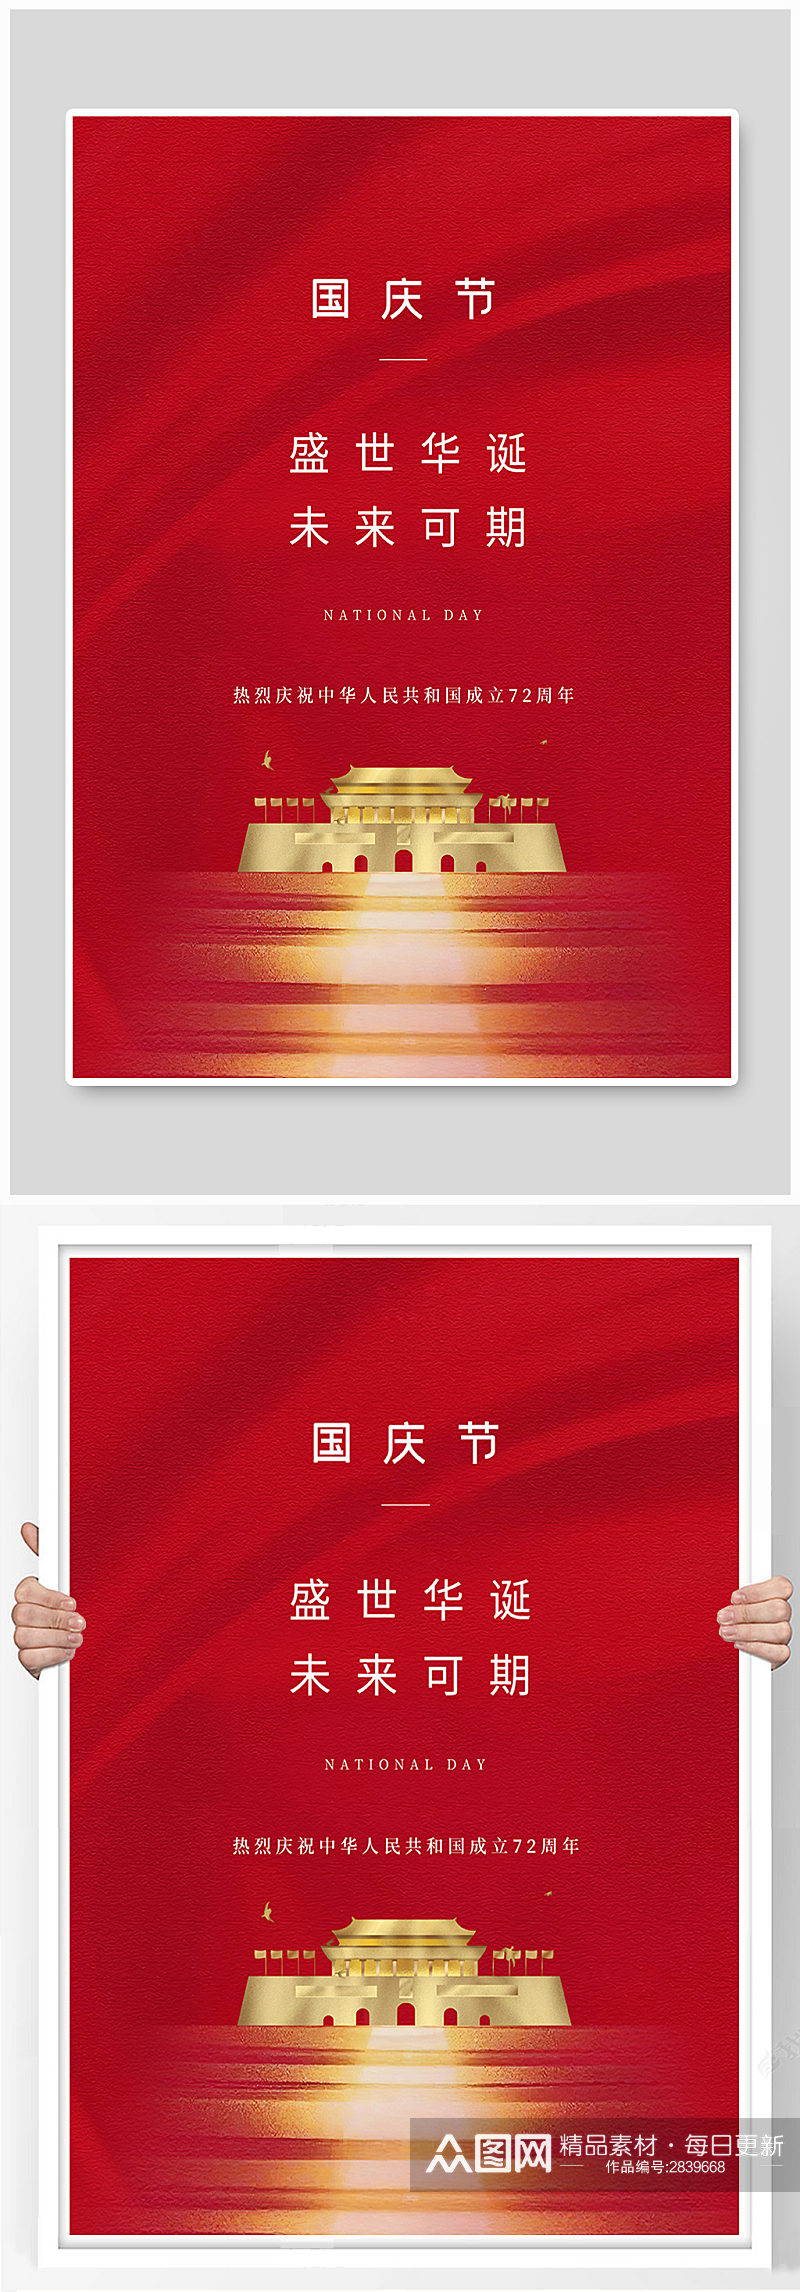 国庆节天安门红色创意简洁海报素材